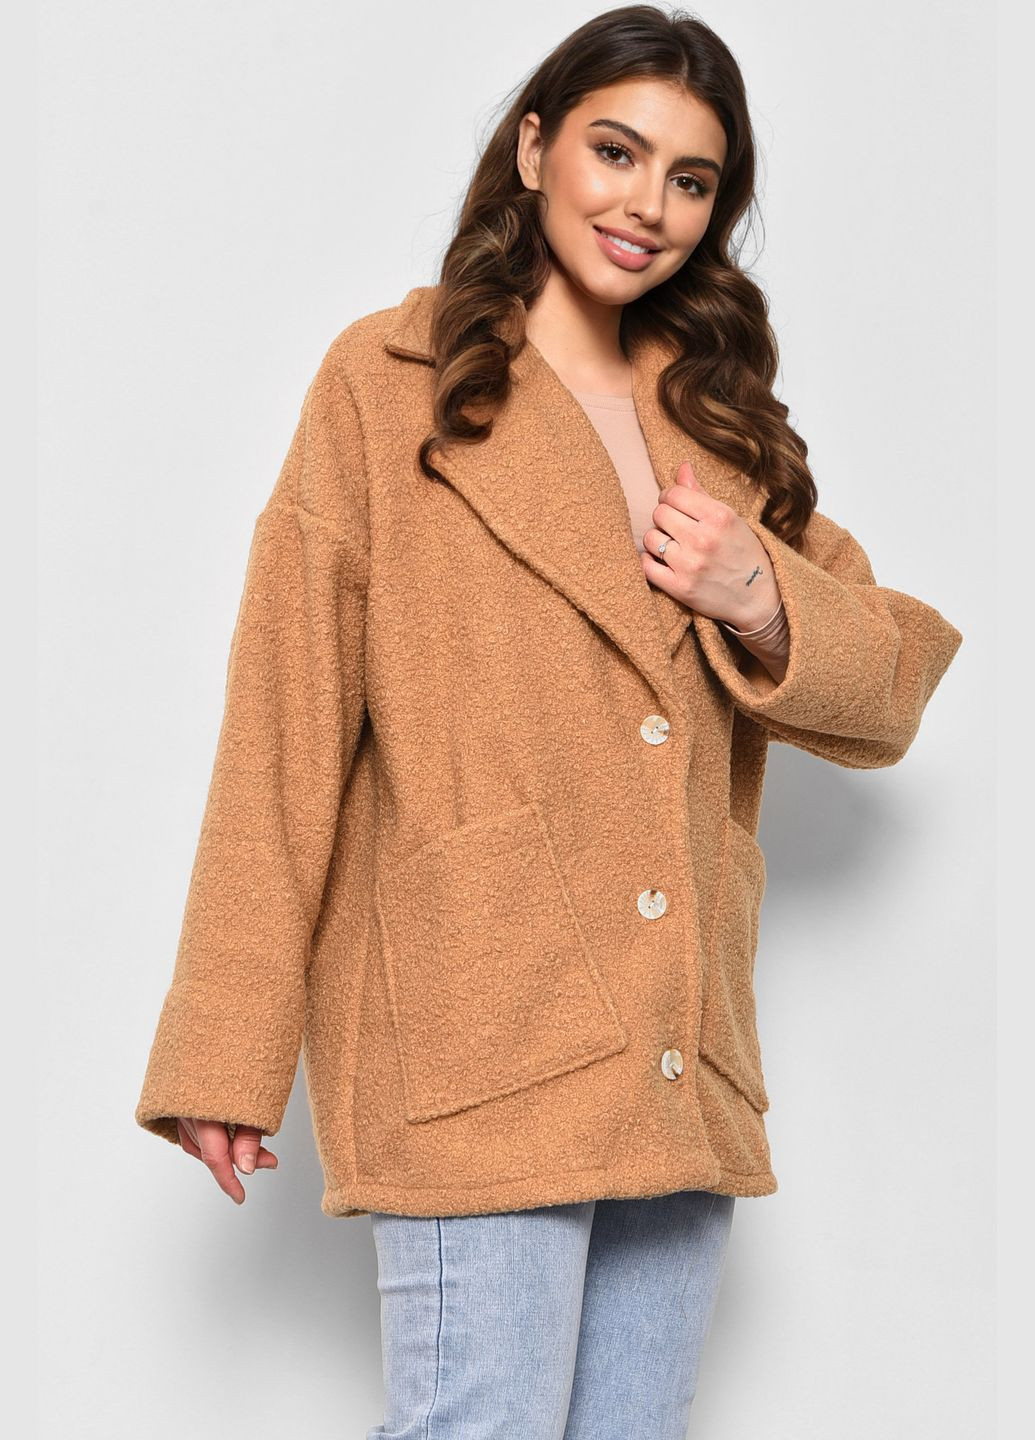 Горчичное демисезонное Пальто женское полубатальное укороченное горчичного цвета Let's Shop